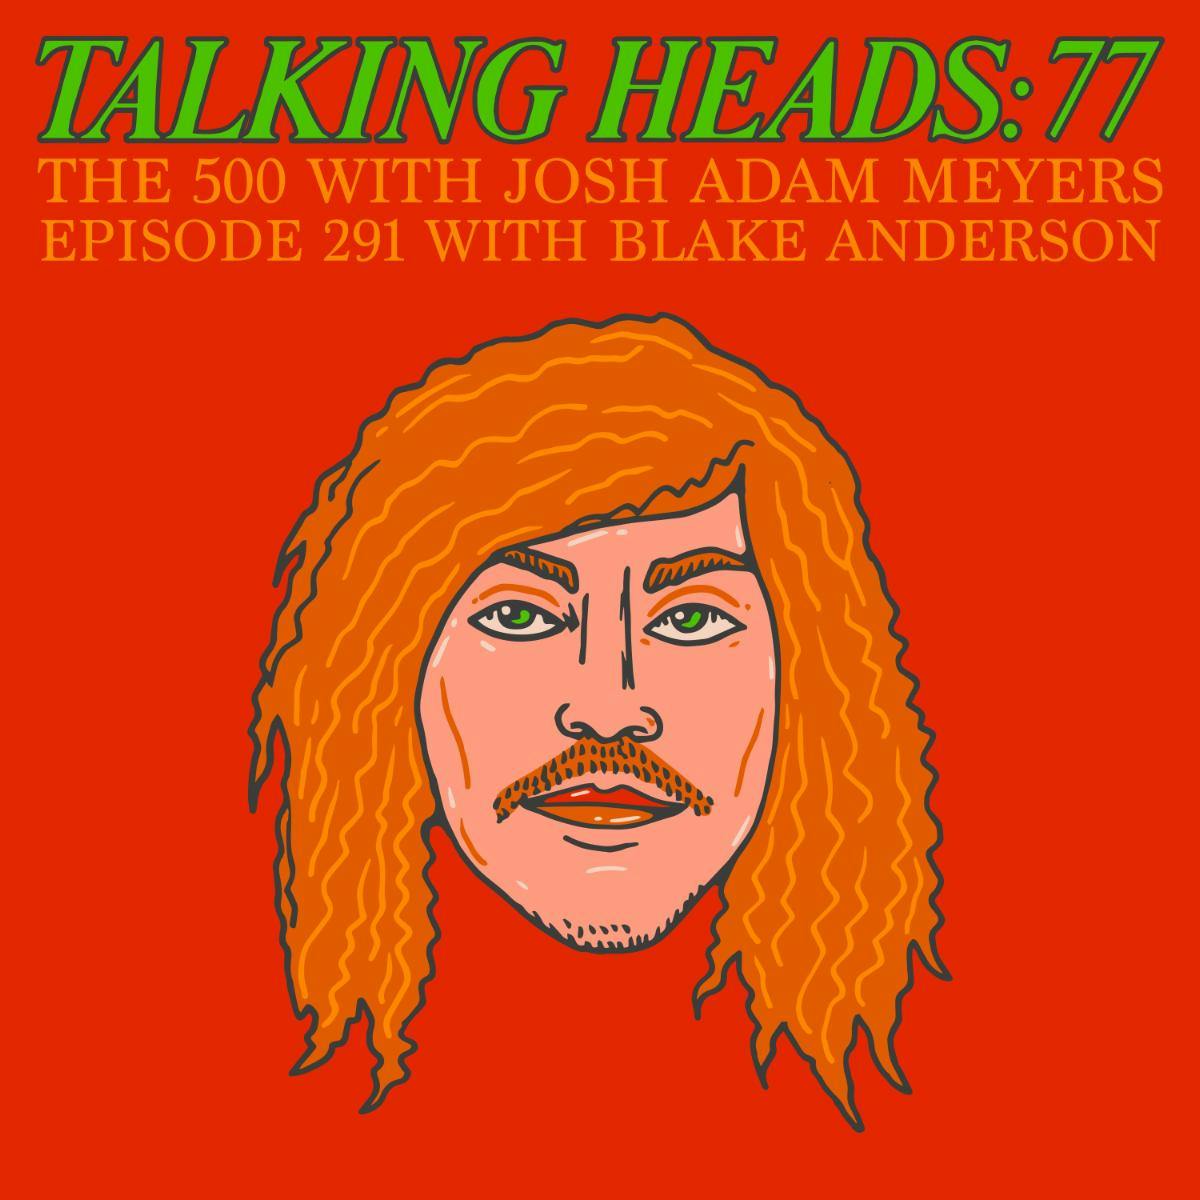 291 - Talking Heads - Talking Heads: 77 - Blake Anderson